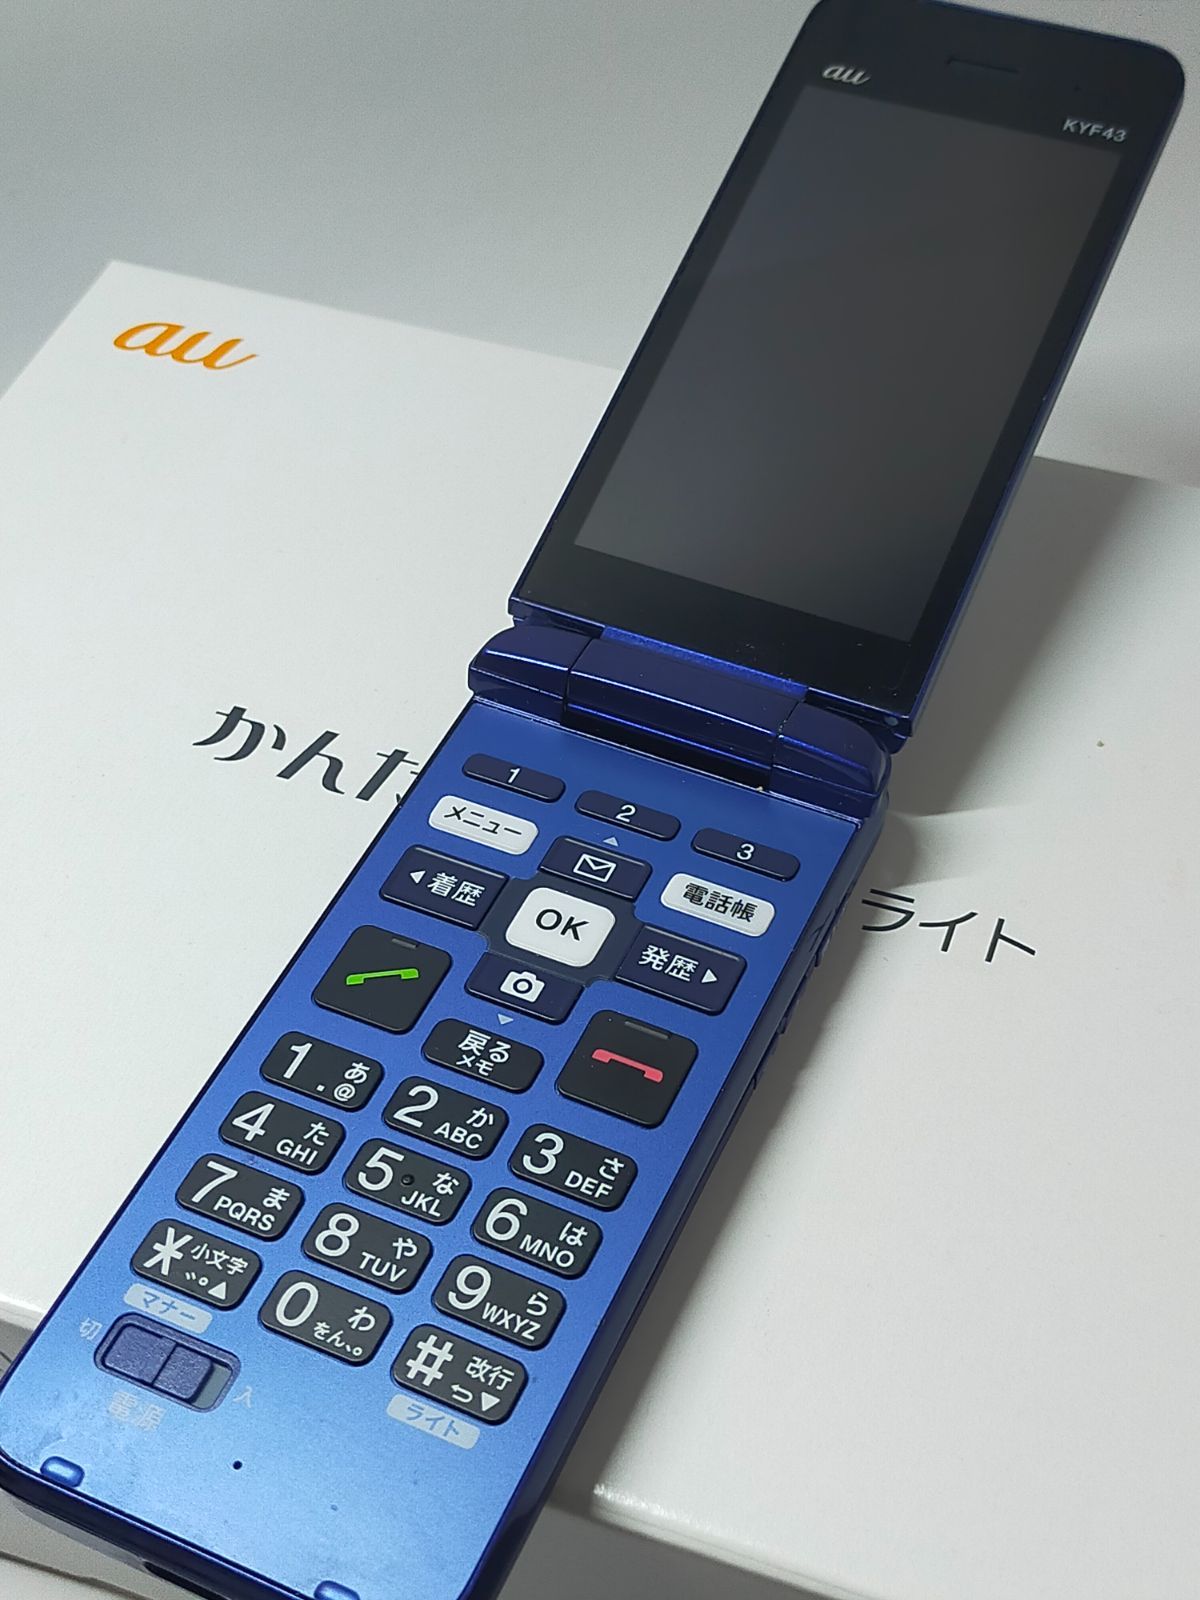 かんたんケータイライト ガラケー 京セラ KYF43 4G対応携帯 